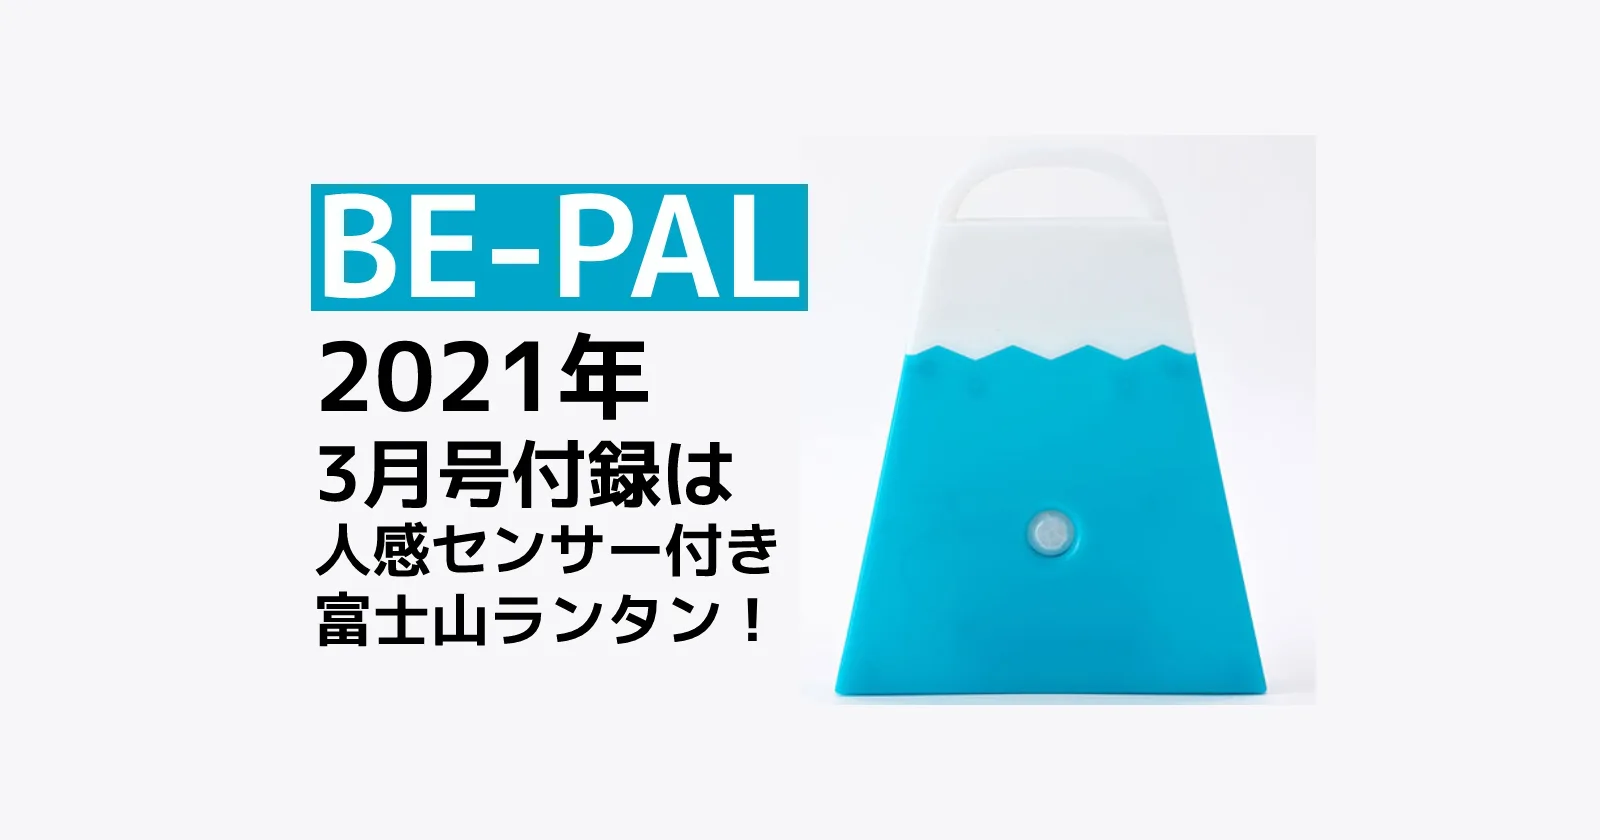 BE-PAL(ビーパル) 】2021年3月号の付録は人感センサー付き富士山